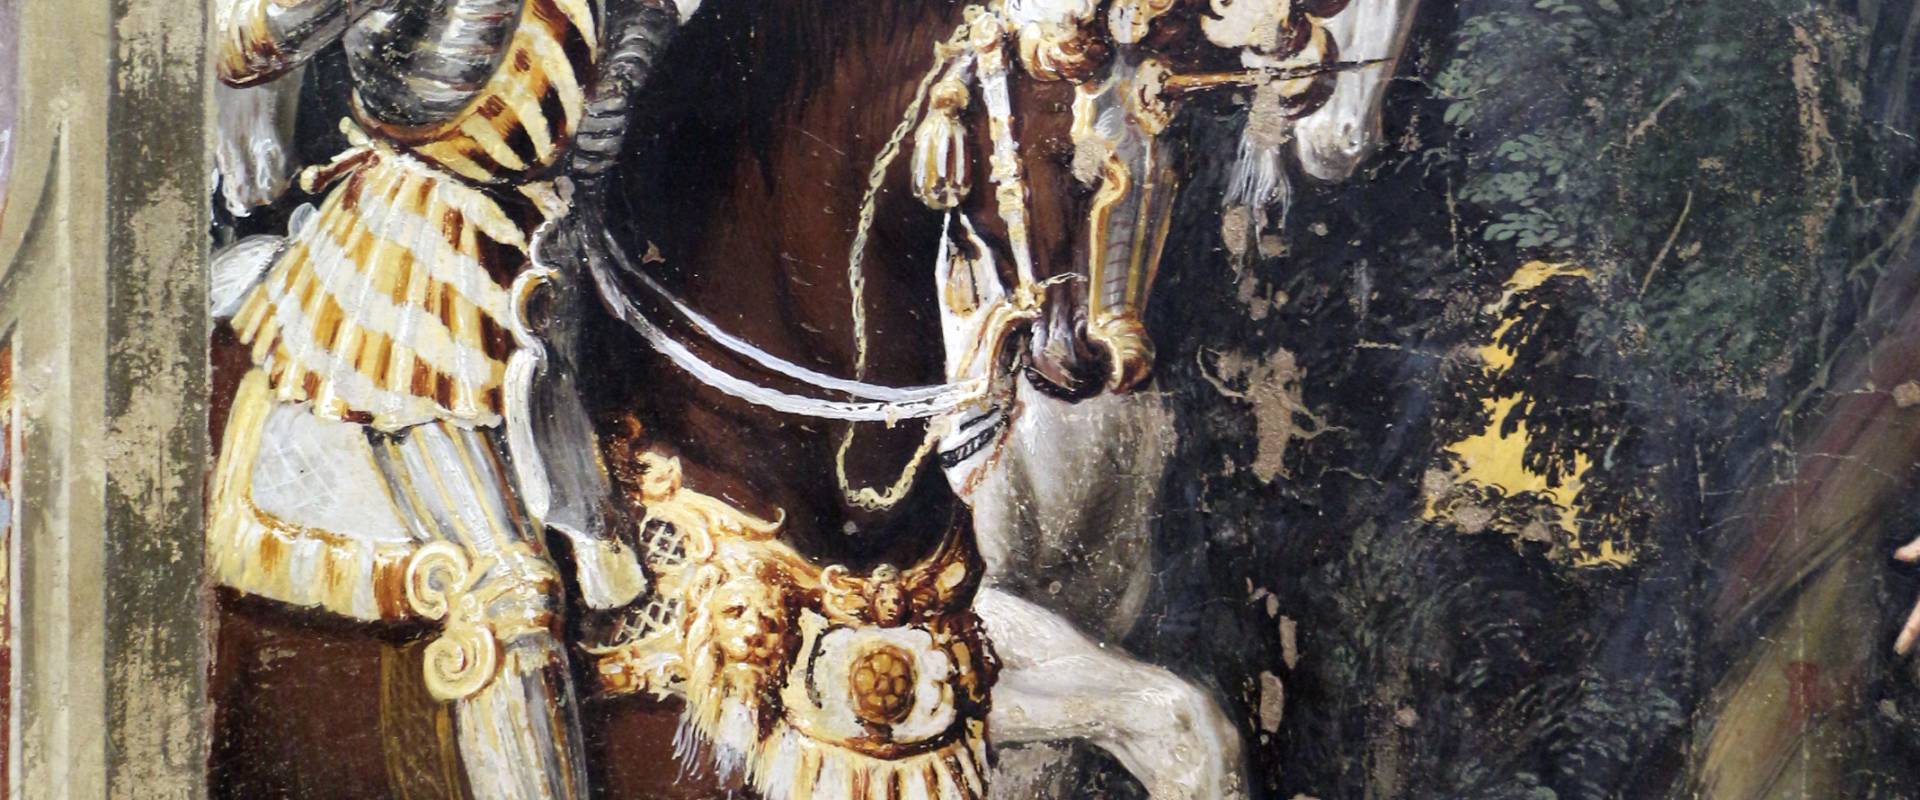 Niccolò dell'abate, affreschi dell'orlando furioso, da palazzo torfanini 04 alcina riceve ruggero 2 foto di Sailko